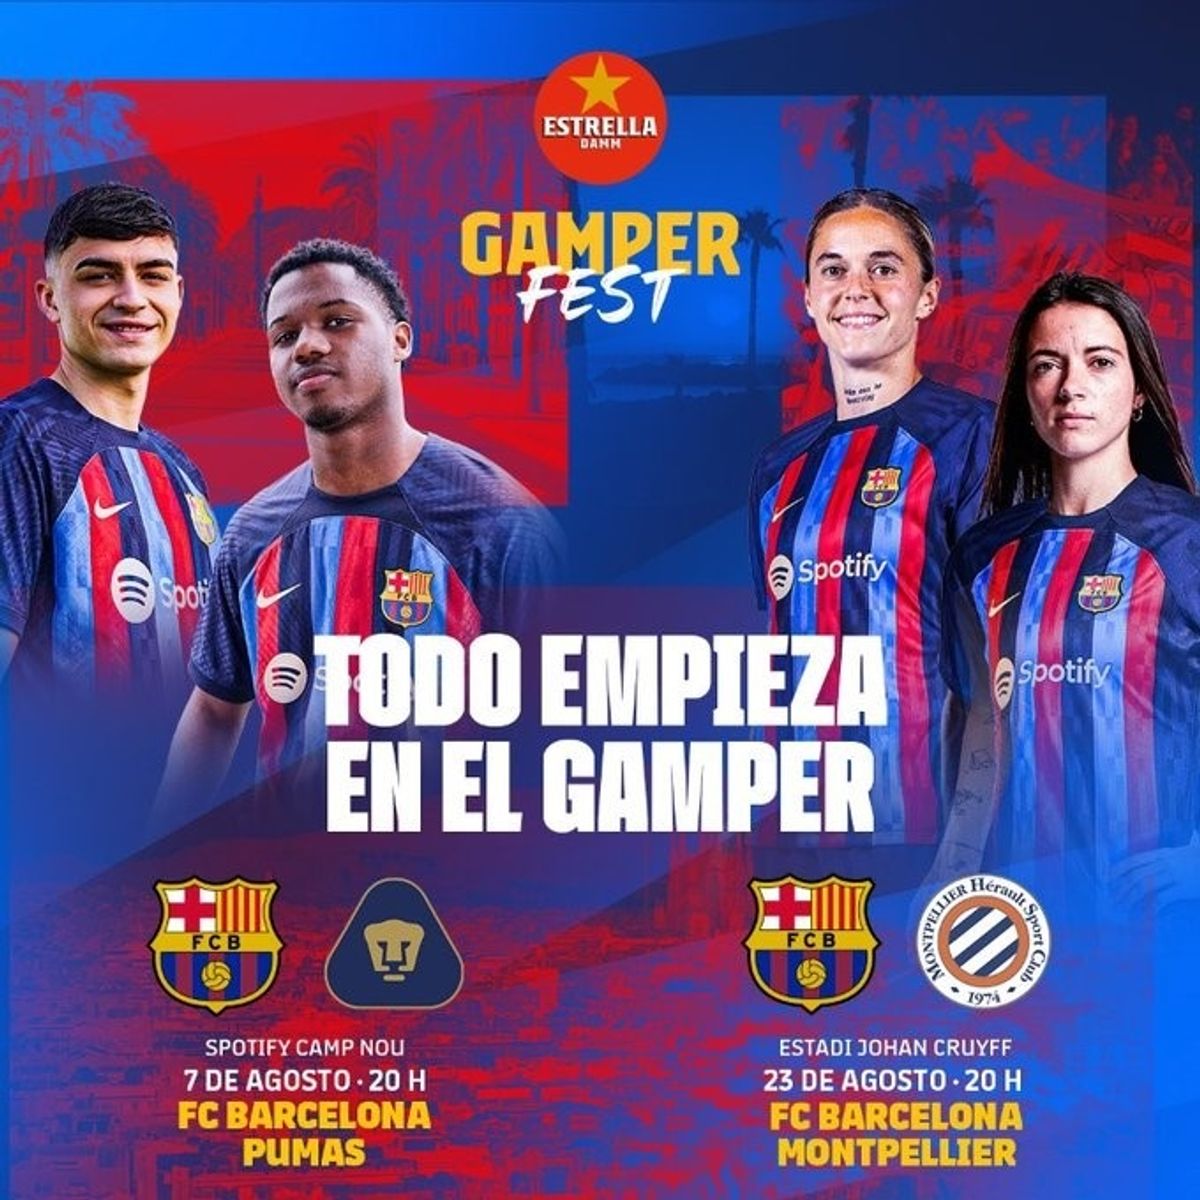 Pumas y Montpellier, rivales del Barça masculino y femenino en el Trofeo Joan Gamper